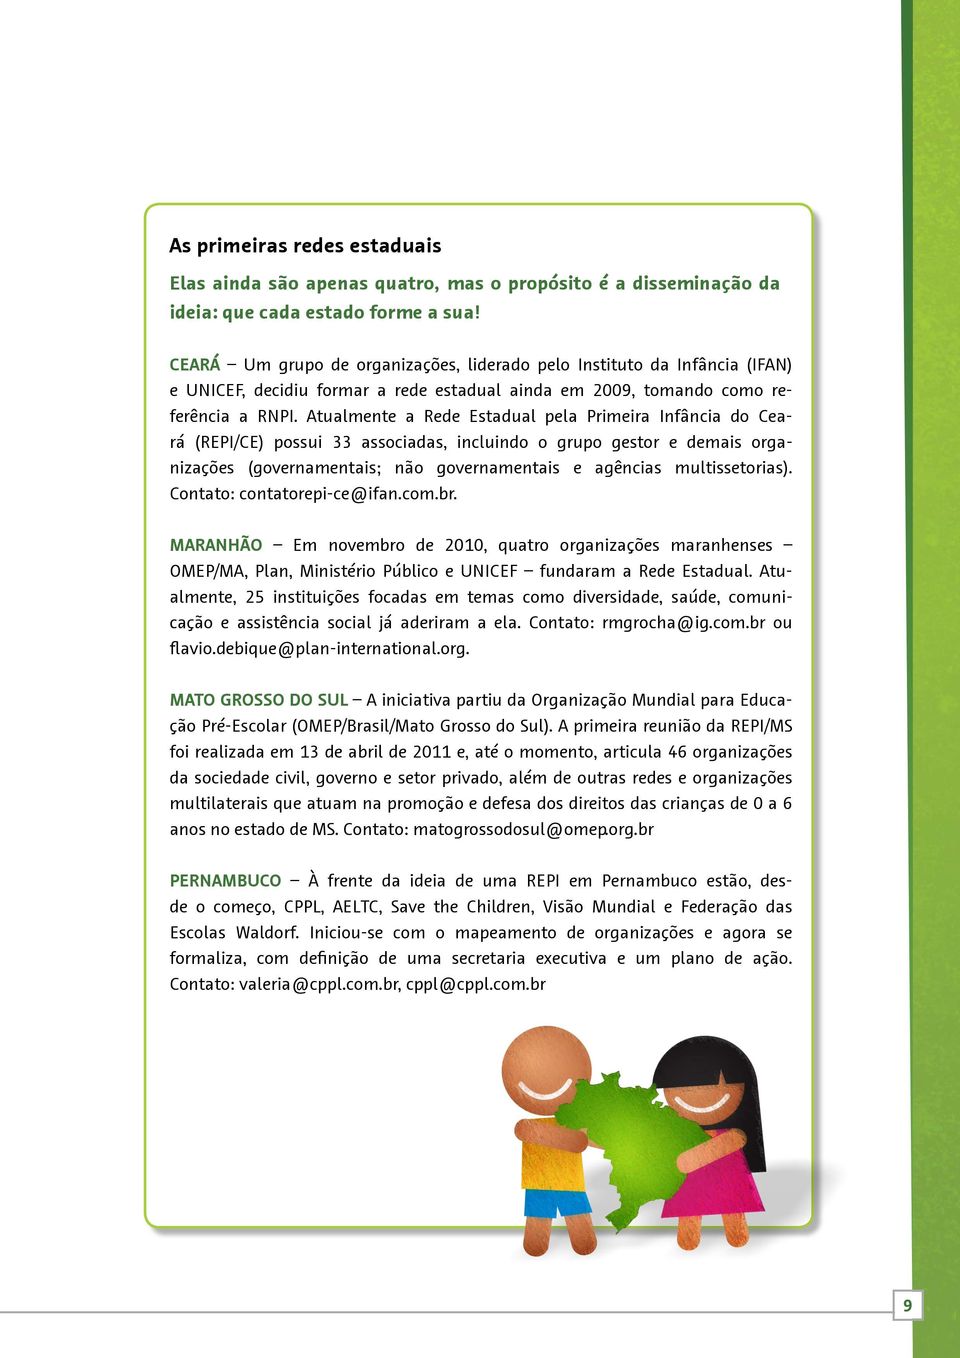 Atualmente a Rede Estadual pela Primeira Infância do Ceará (REPI/CE) possui 33 associadas, incluindo o grupo gestor e demais organizações (governamentais; não governamentais e agências